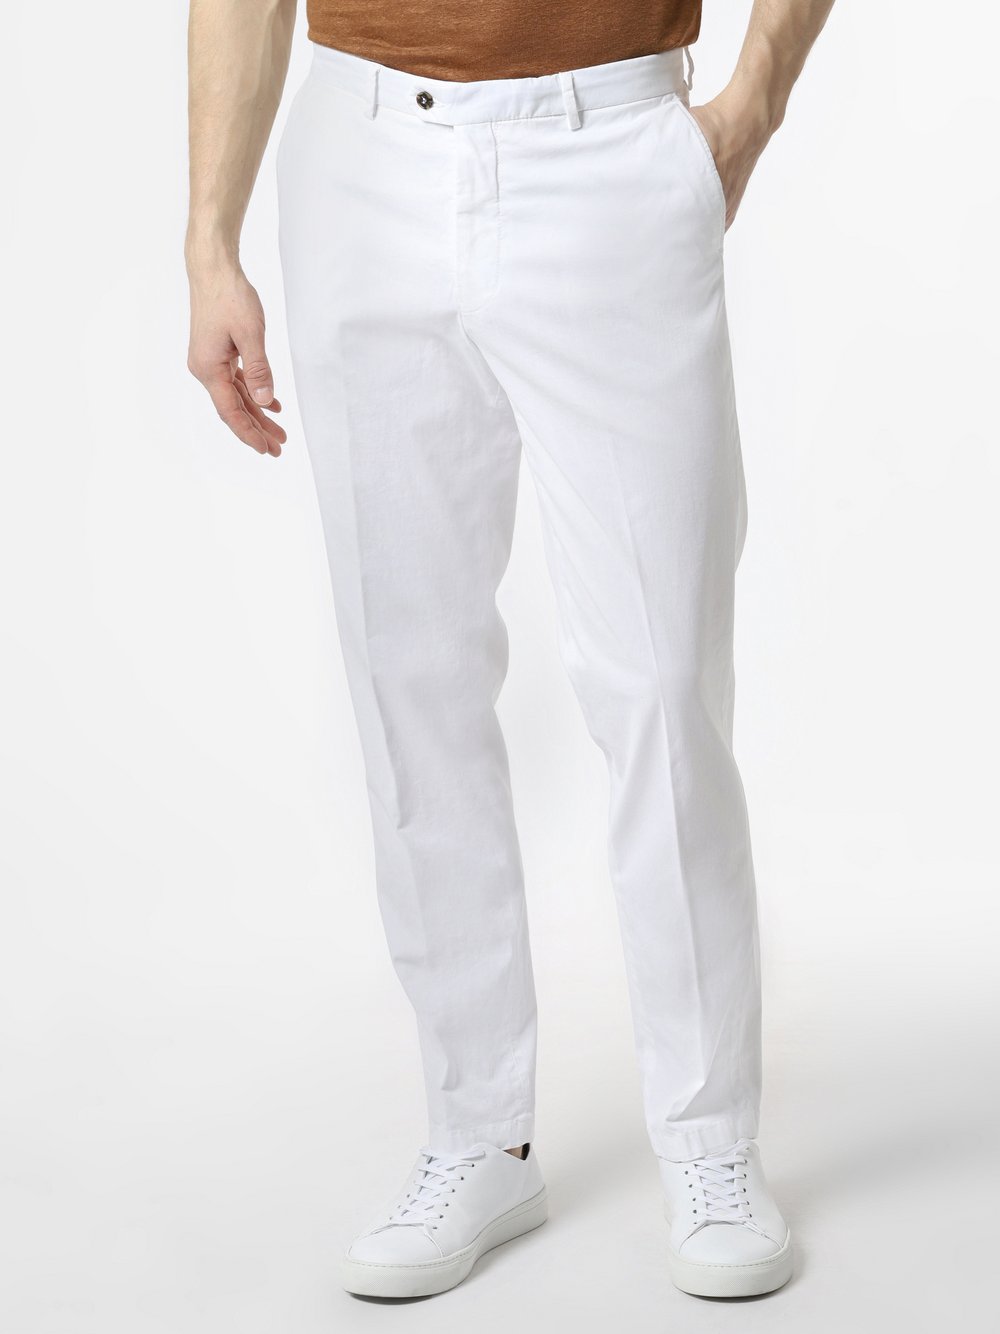 Andrew James New York - Spodnie męskie – Carter, biały